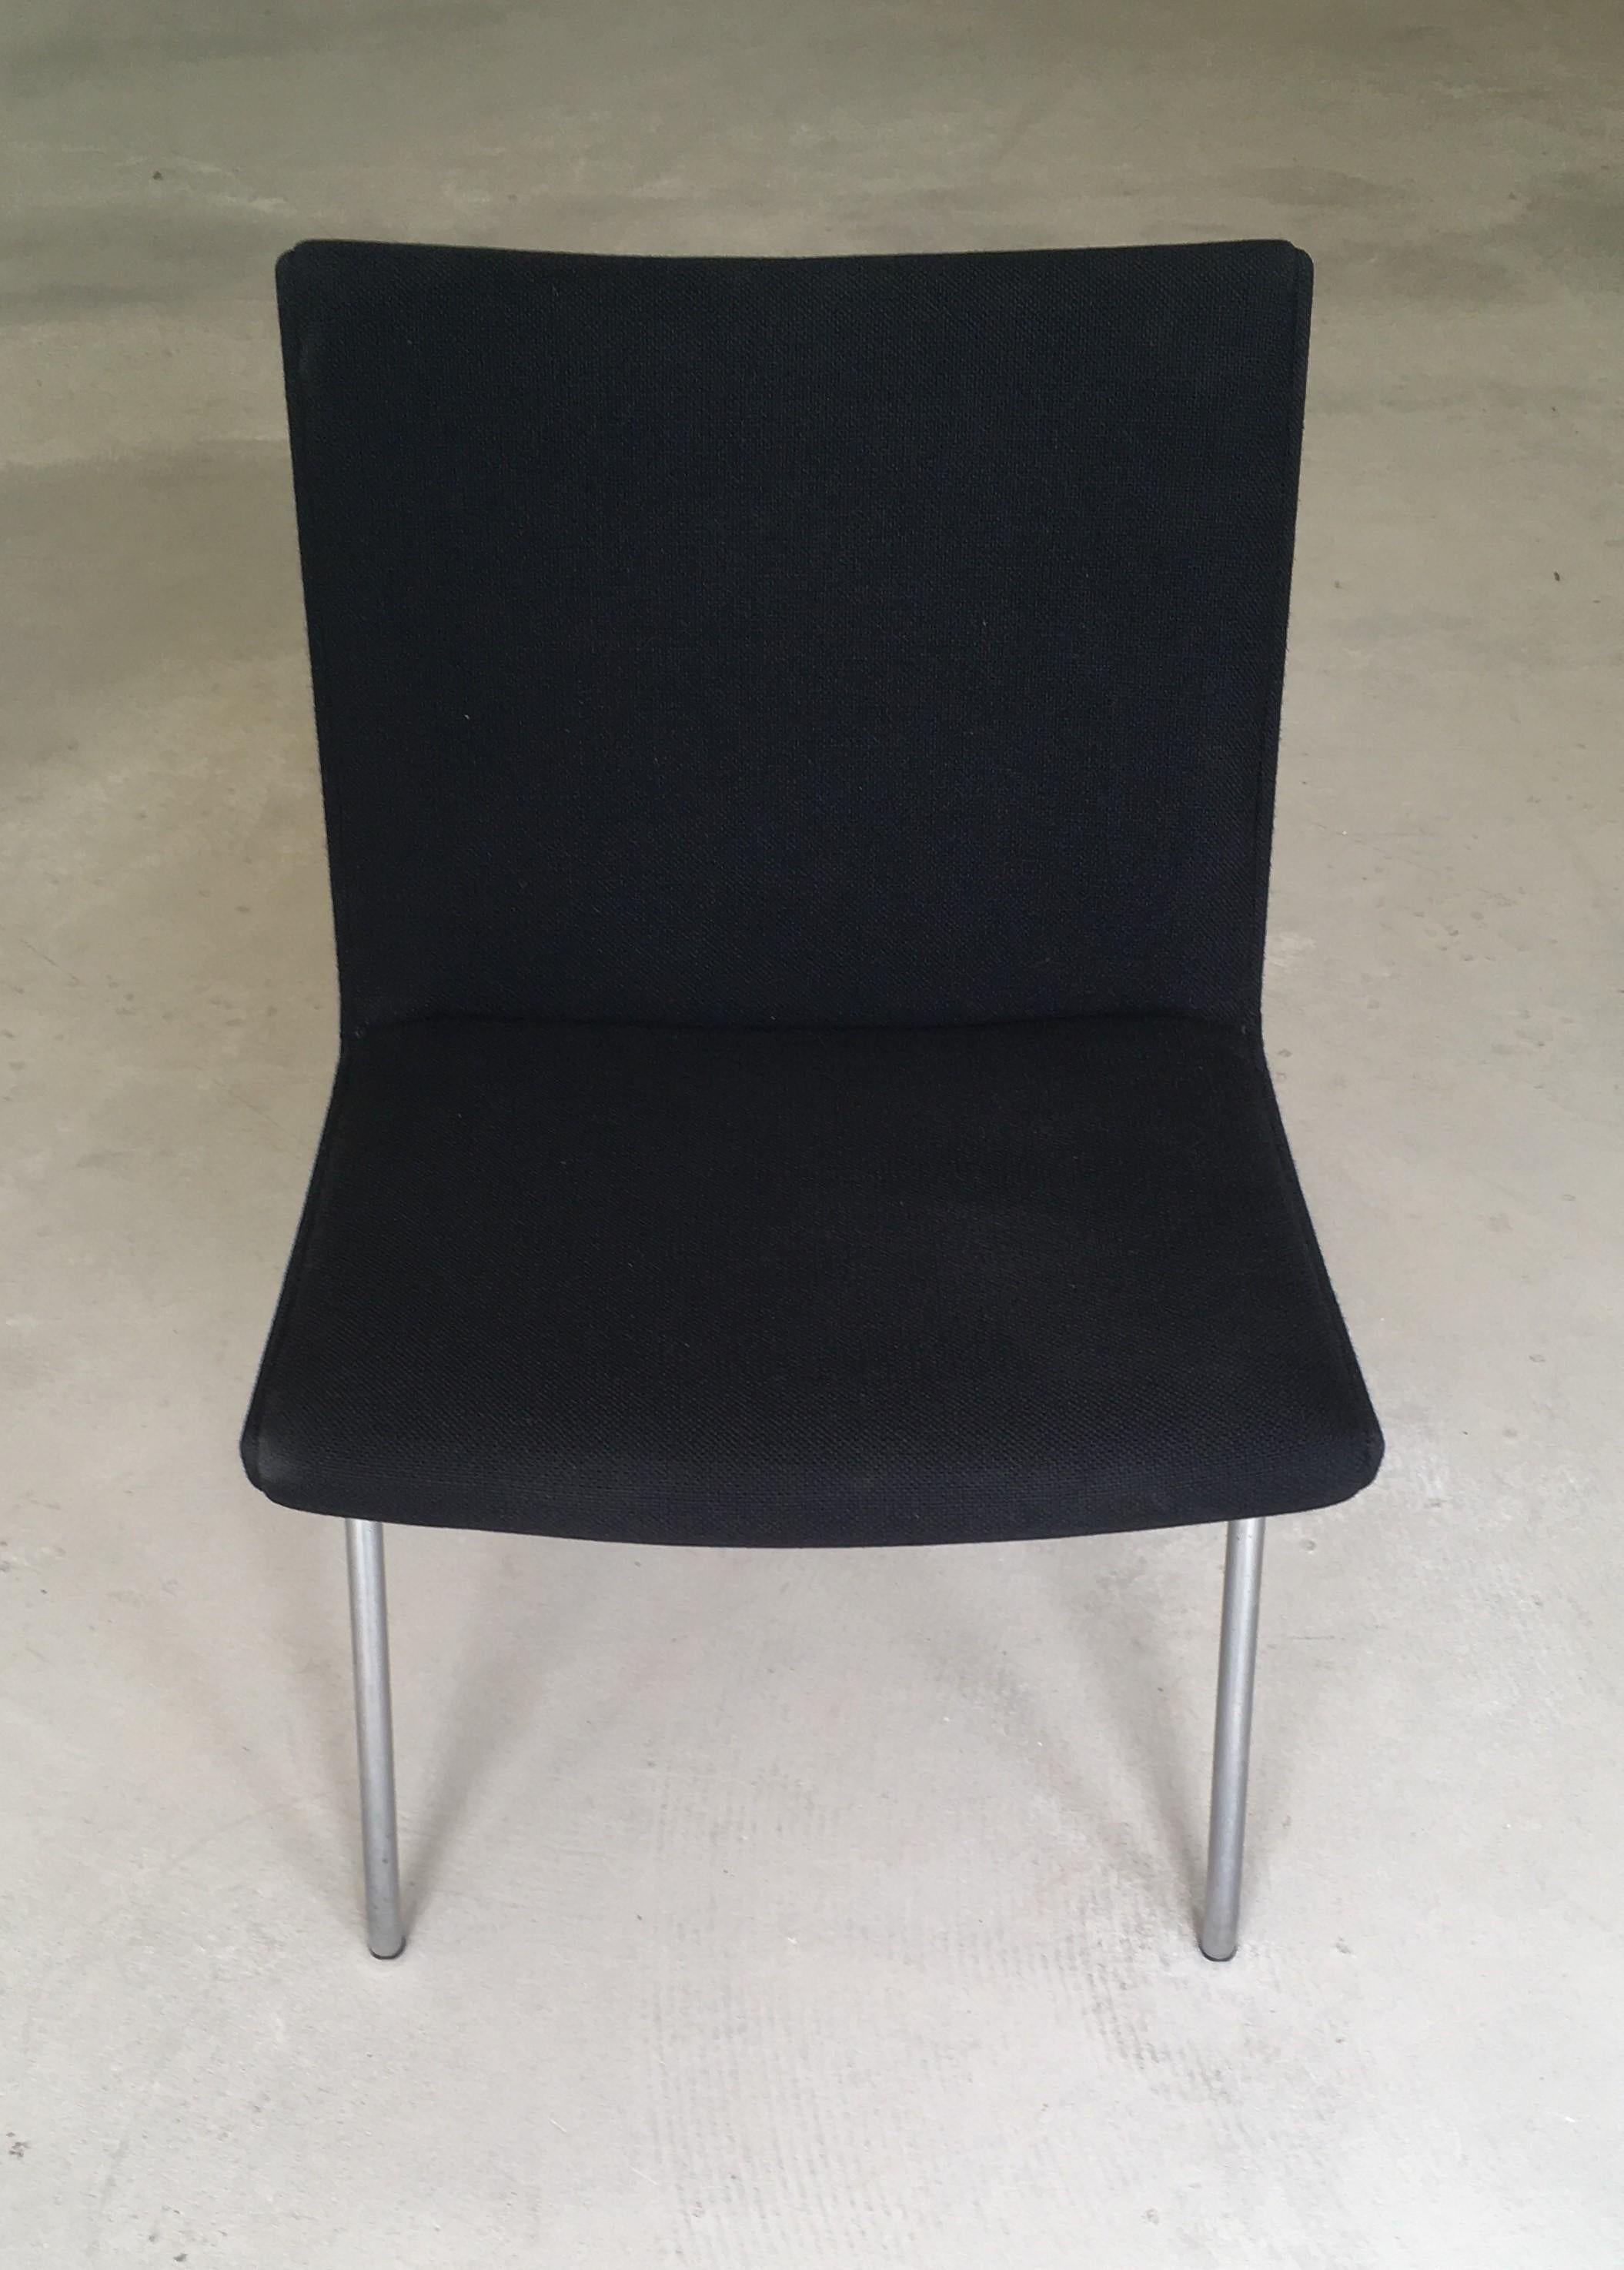 Hans Wegner AP38 'Airport' Stuhl von A.P. Gestohlen.

Außergewöhnlicher moderner Stuhl seiner Zeit. 1958 entworfen, auf Stahlrohrrahmen. Die Sitze wurden mit schwarzem Kvadrat Hallingdal 65 neu gepolstert. 

Obwohl dieser Stuhl nicht speziell für